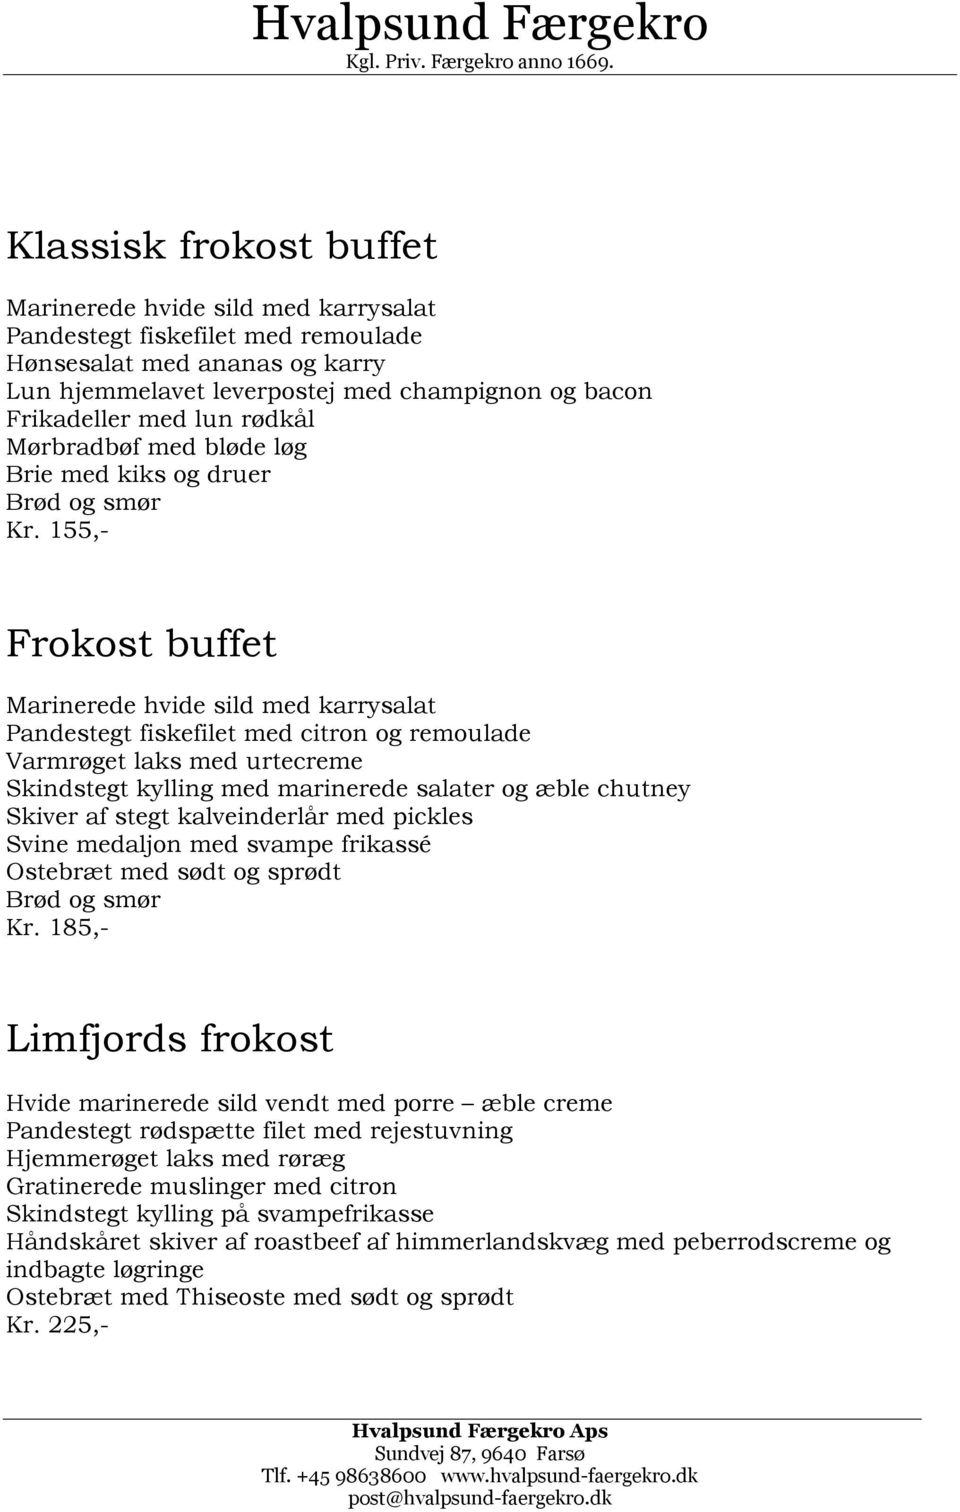 Hvalpsund Færgekro. Hvalpsund Færgekro. Kgl. Priv. Færgekro anno 166.  Selskaber PDF Gratis download